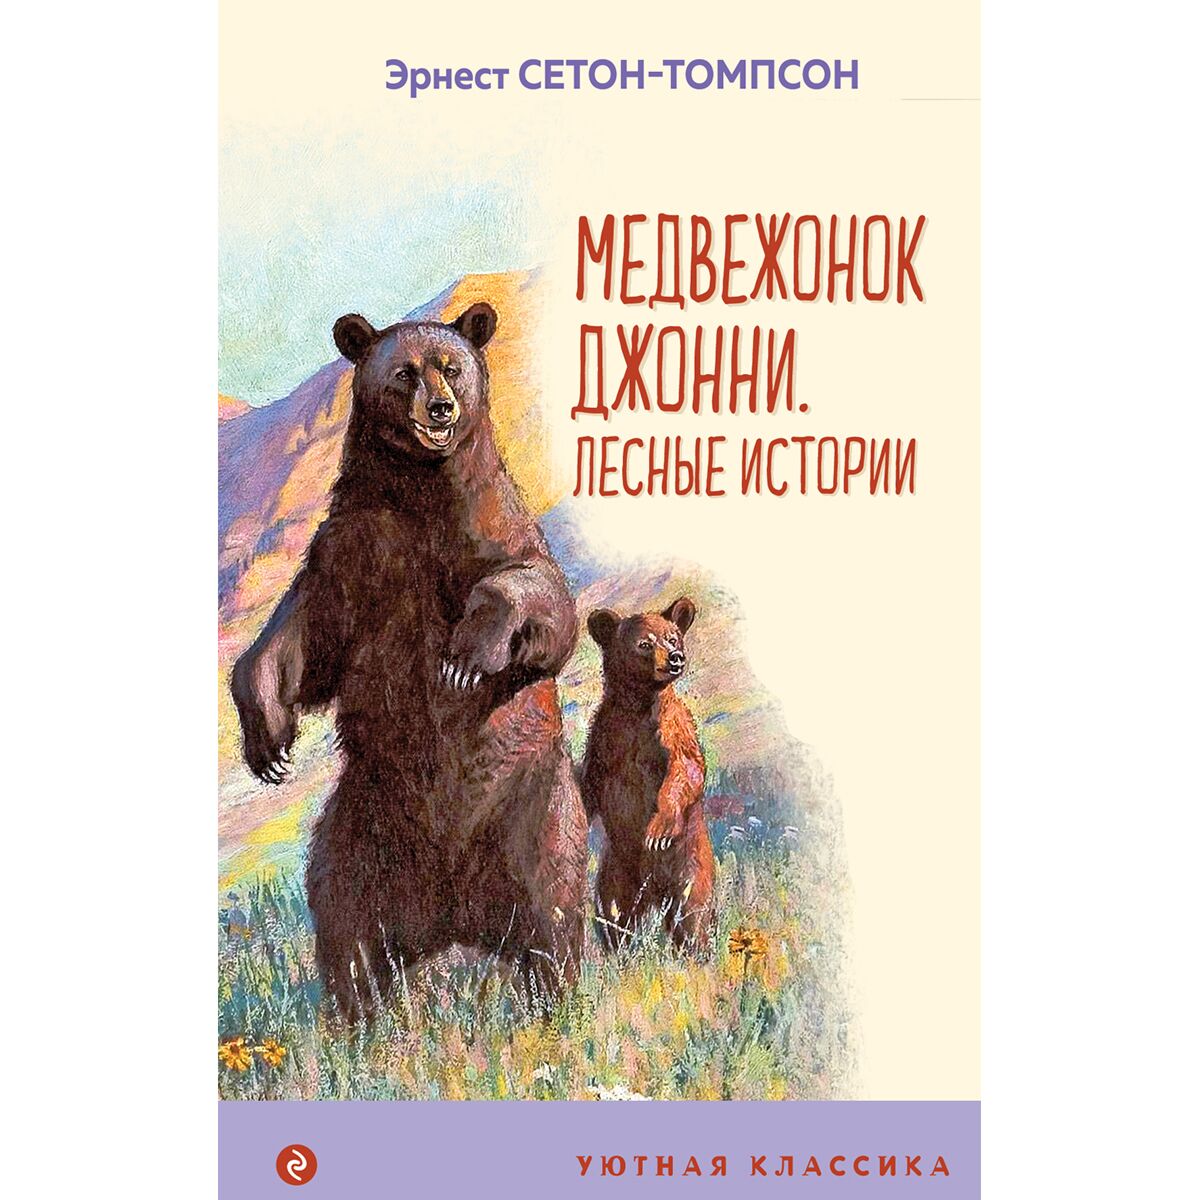 Лесные истории 1. Сетон-Томпсон э. "Медвежонок Джонни". Сетон -Томпсон рассказы Медвежонок Джонни. Медвежонок Джонни книга.